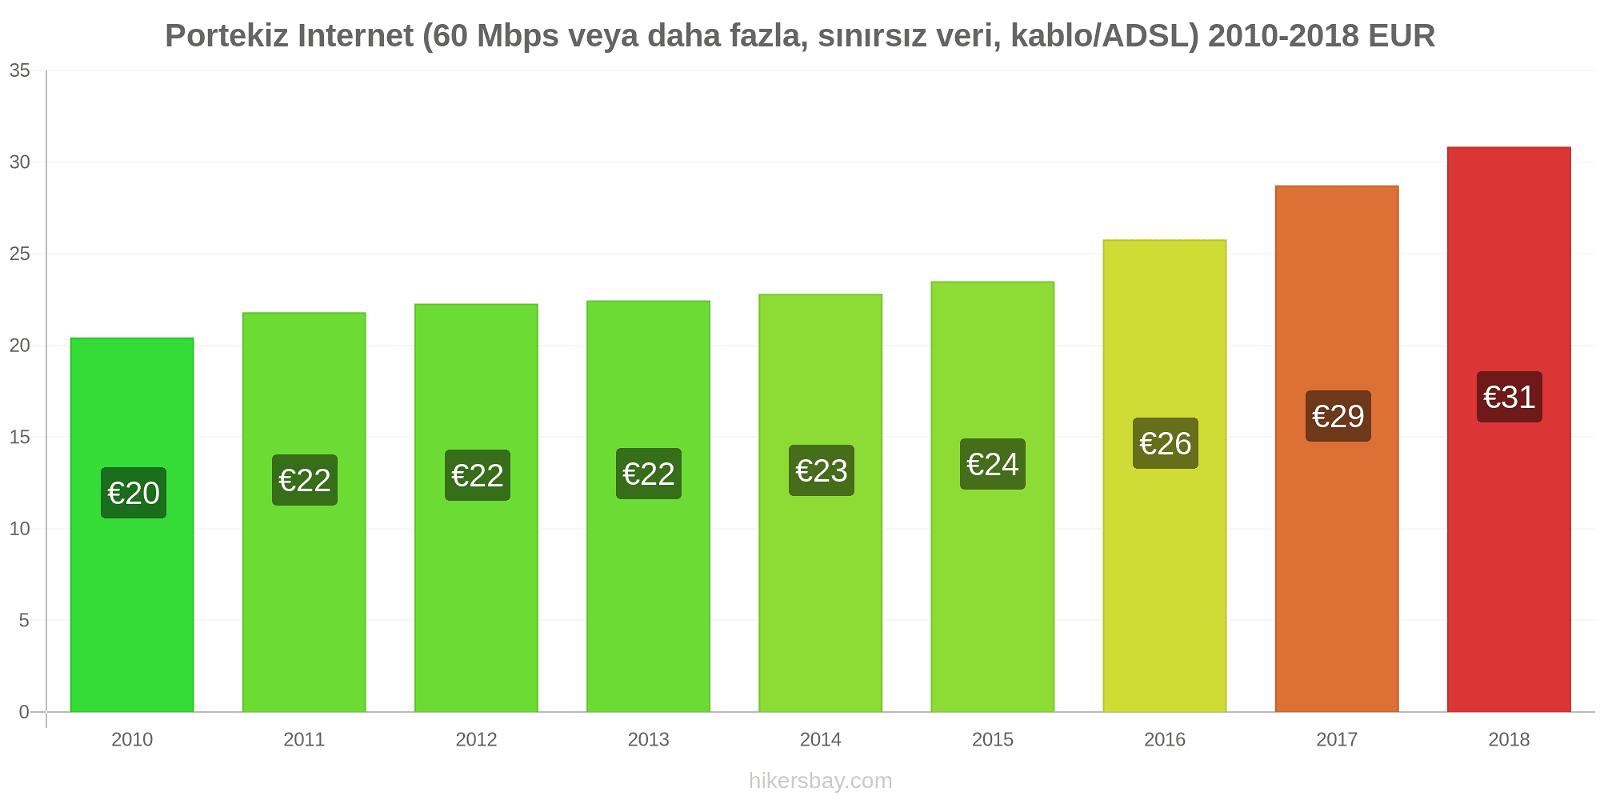 Portekiz fiyat değişiklikleri İnternet (60 Mbps veya daha fazla, sınırsız veri, kablo/ADSL) hikersbay.com